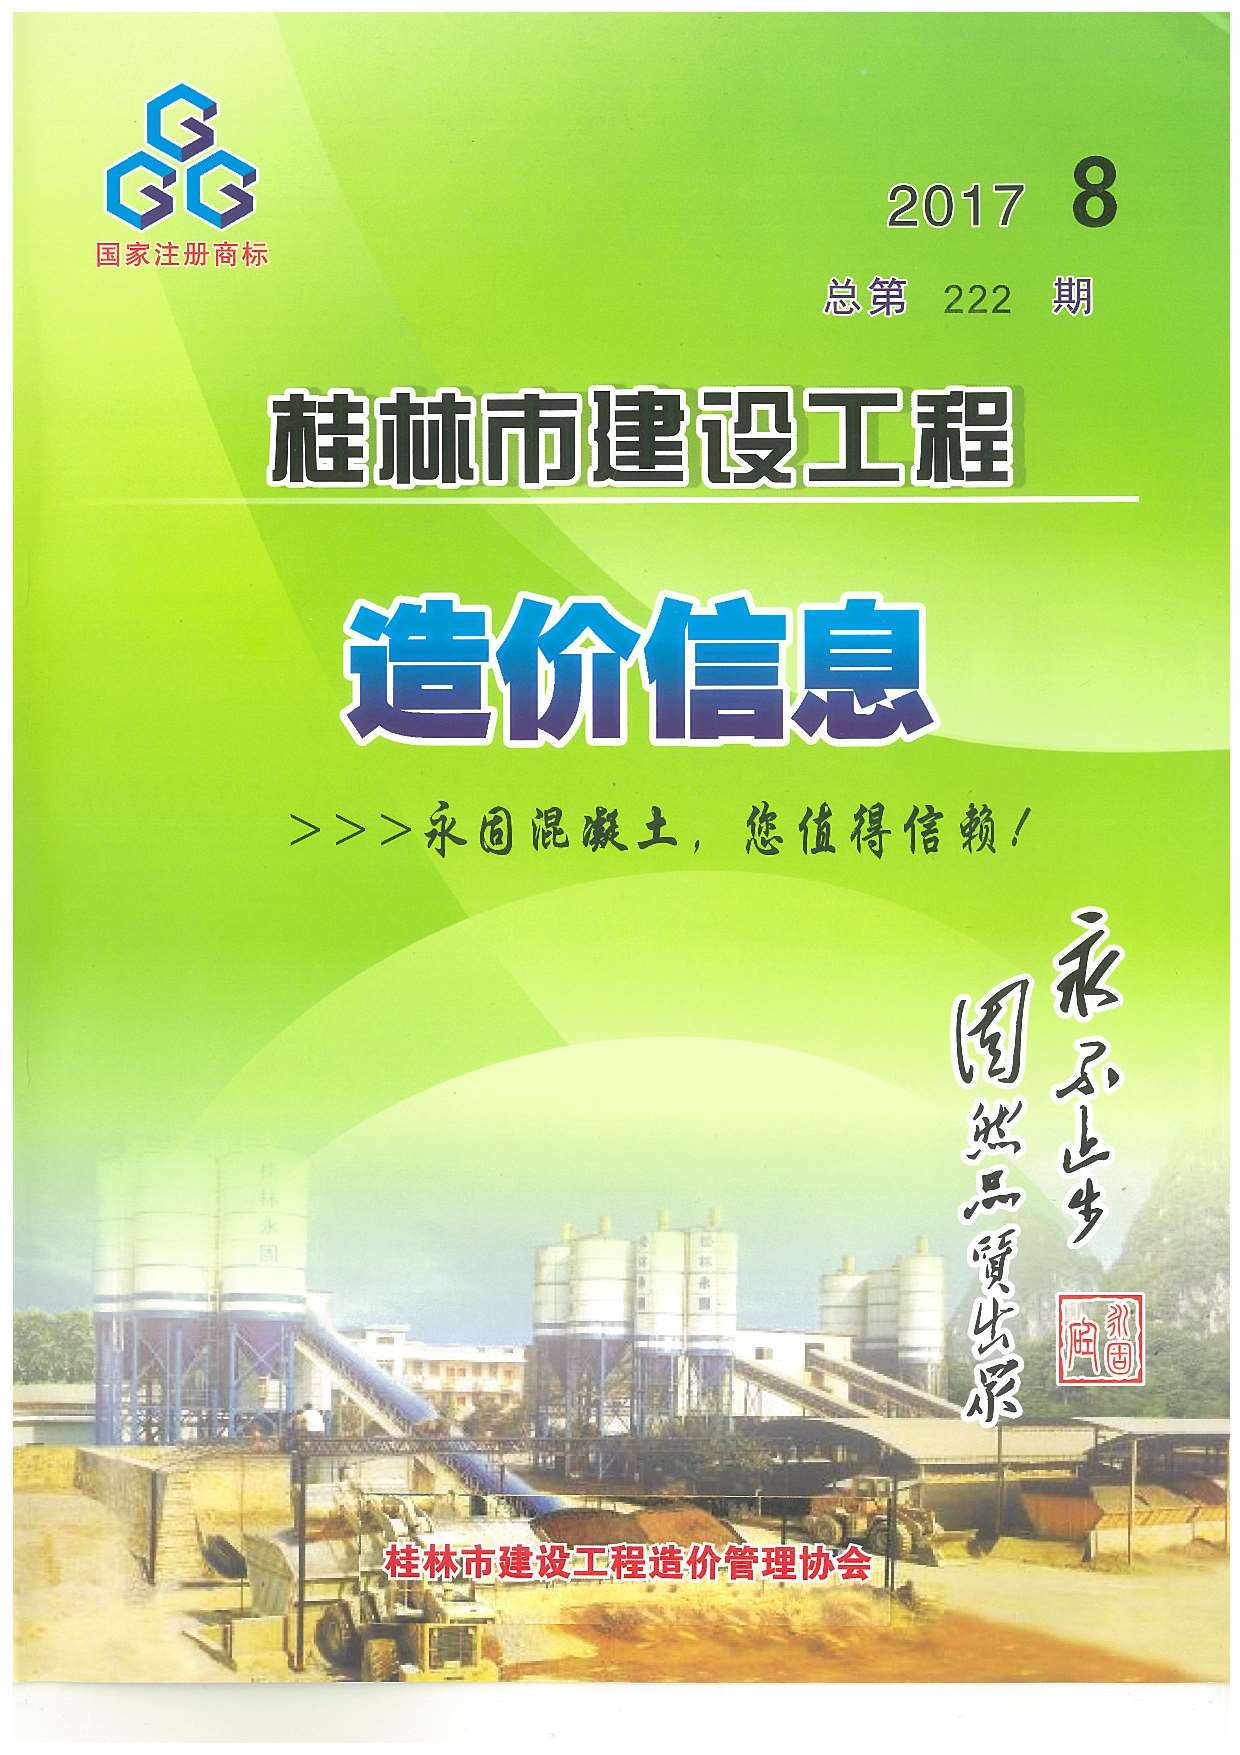 桂林市2017年8月建设工程造价信息造价库信息价